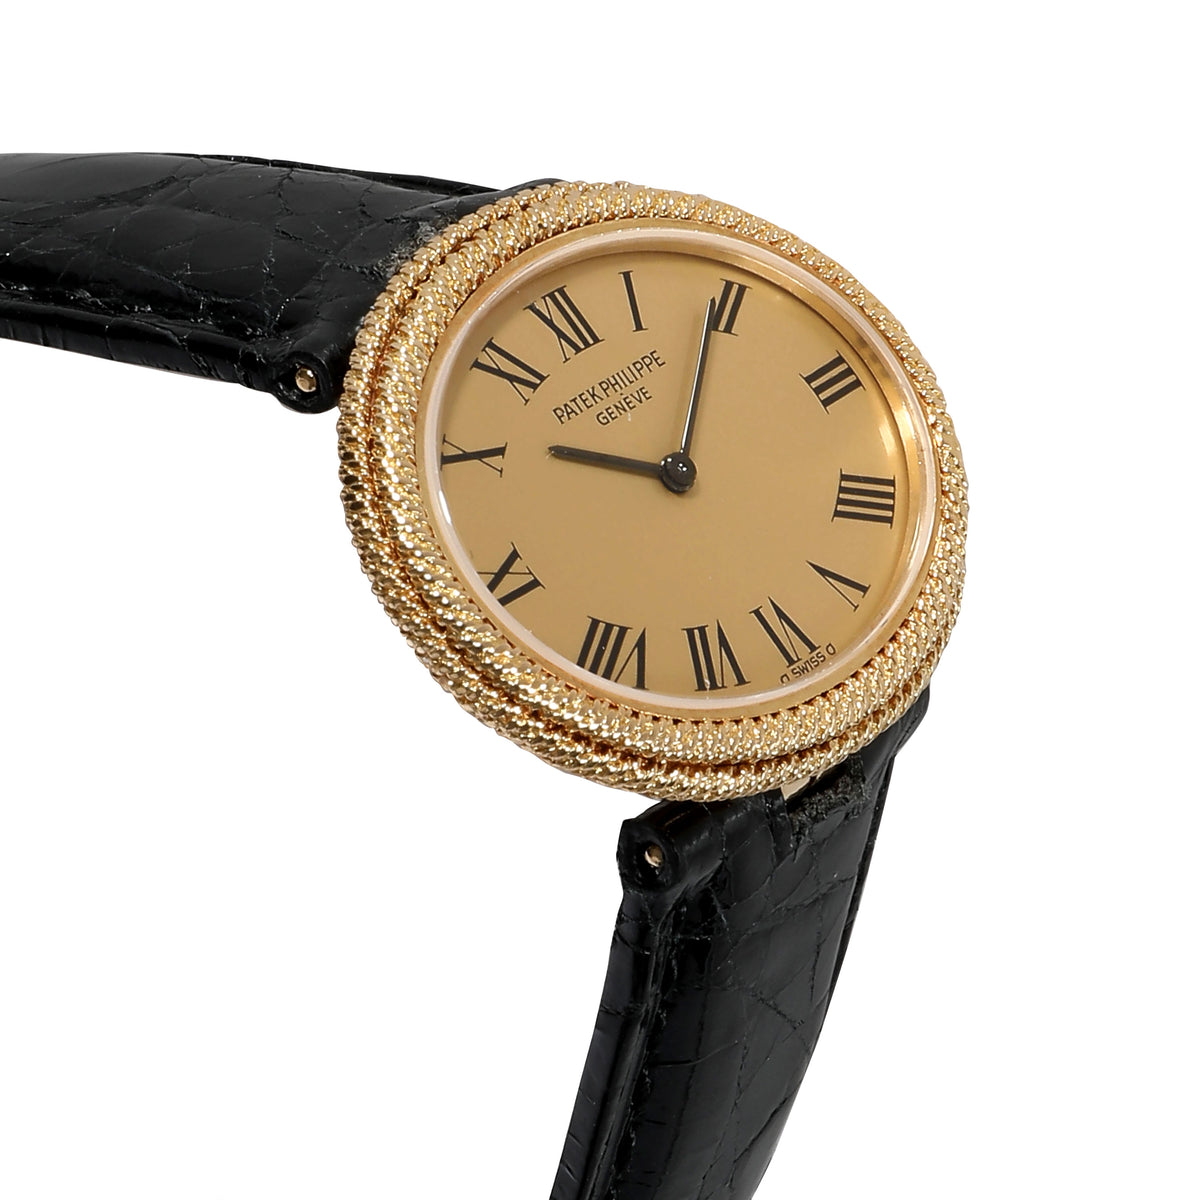 Patek Philippe Ellipse 4290 Women's Watch in 18kt Yellow Gold